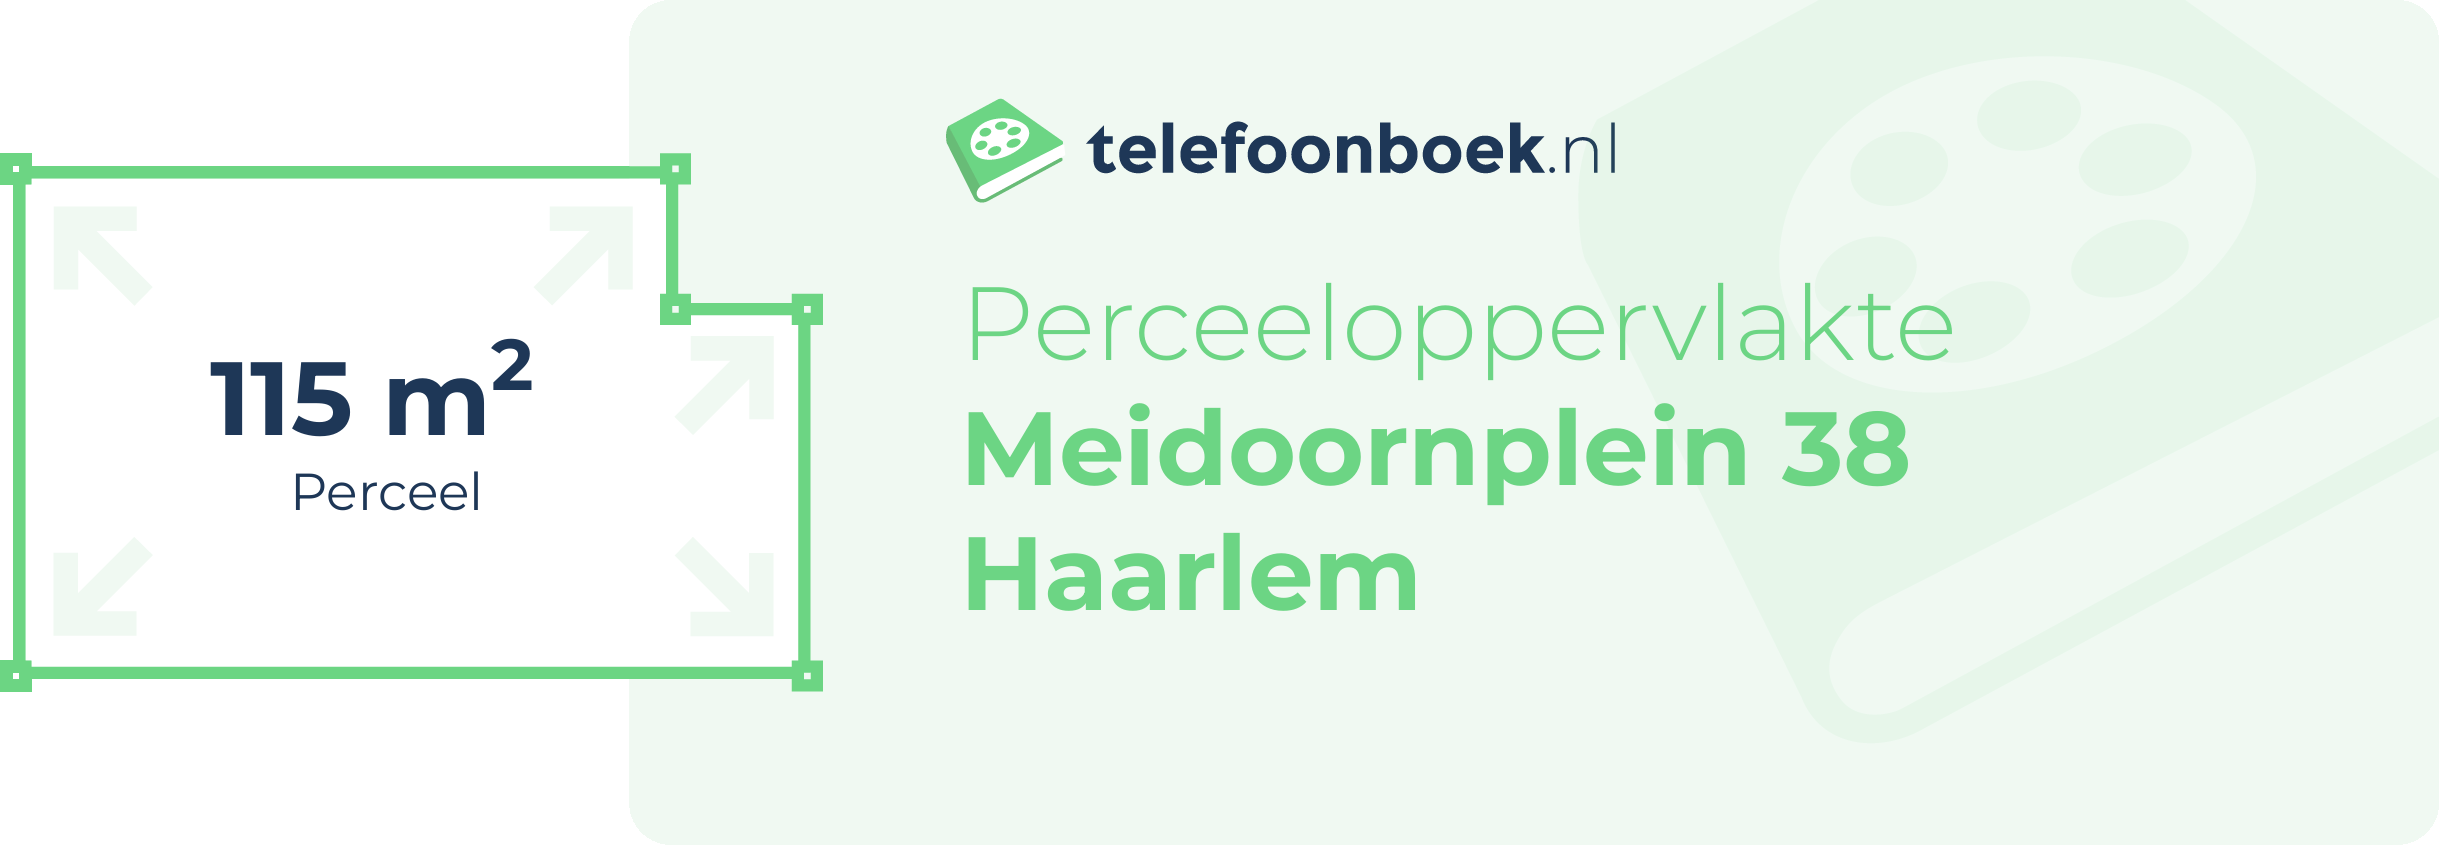 Perceeloppervlakte Meidoornplein 38 Haarlem